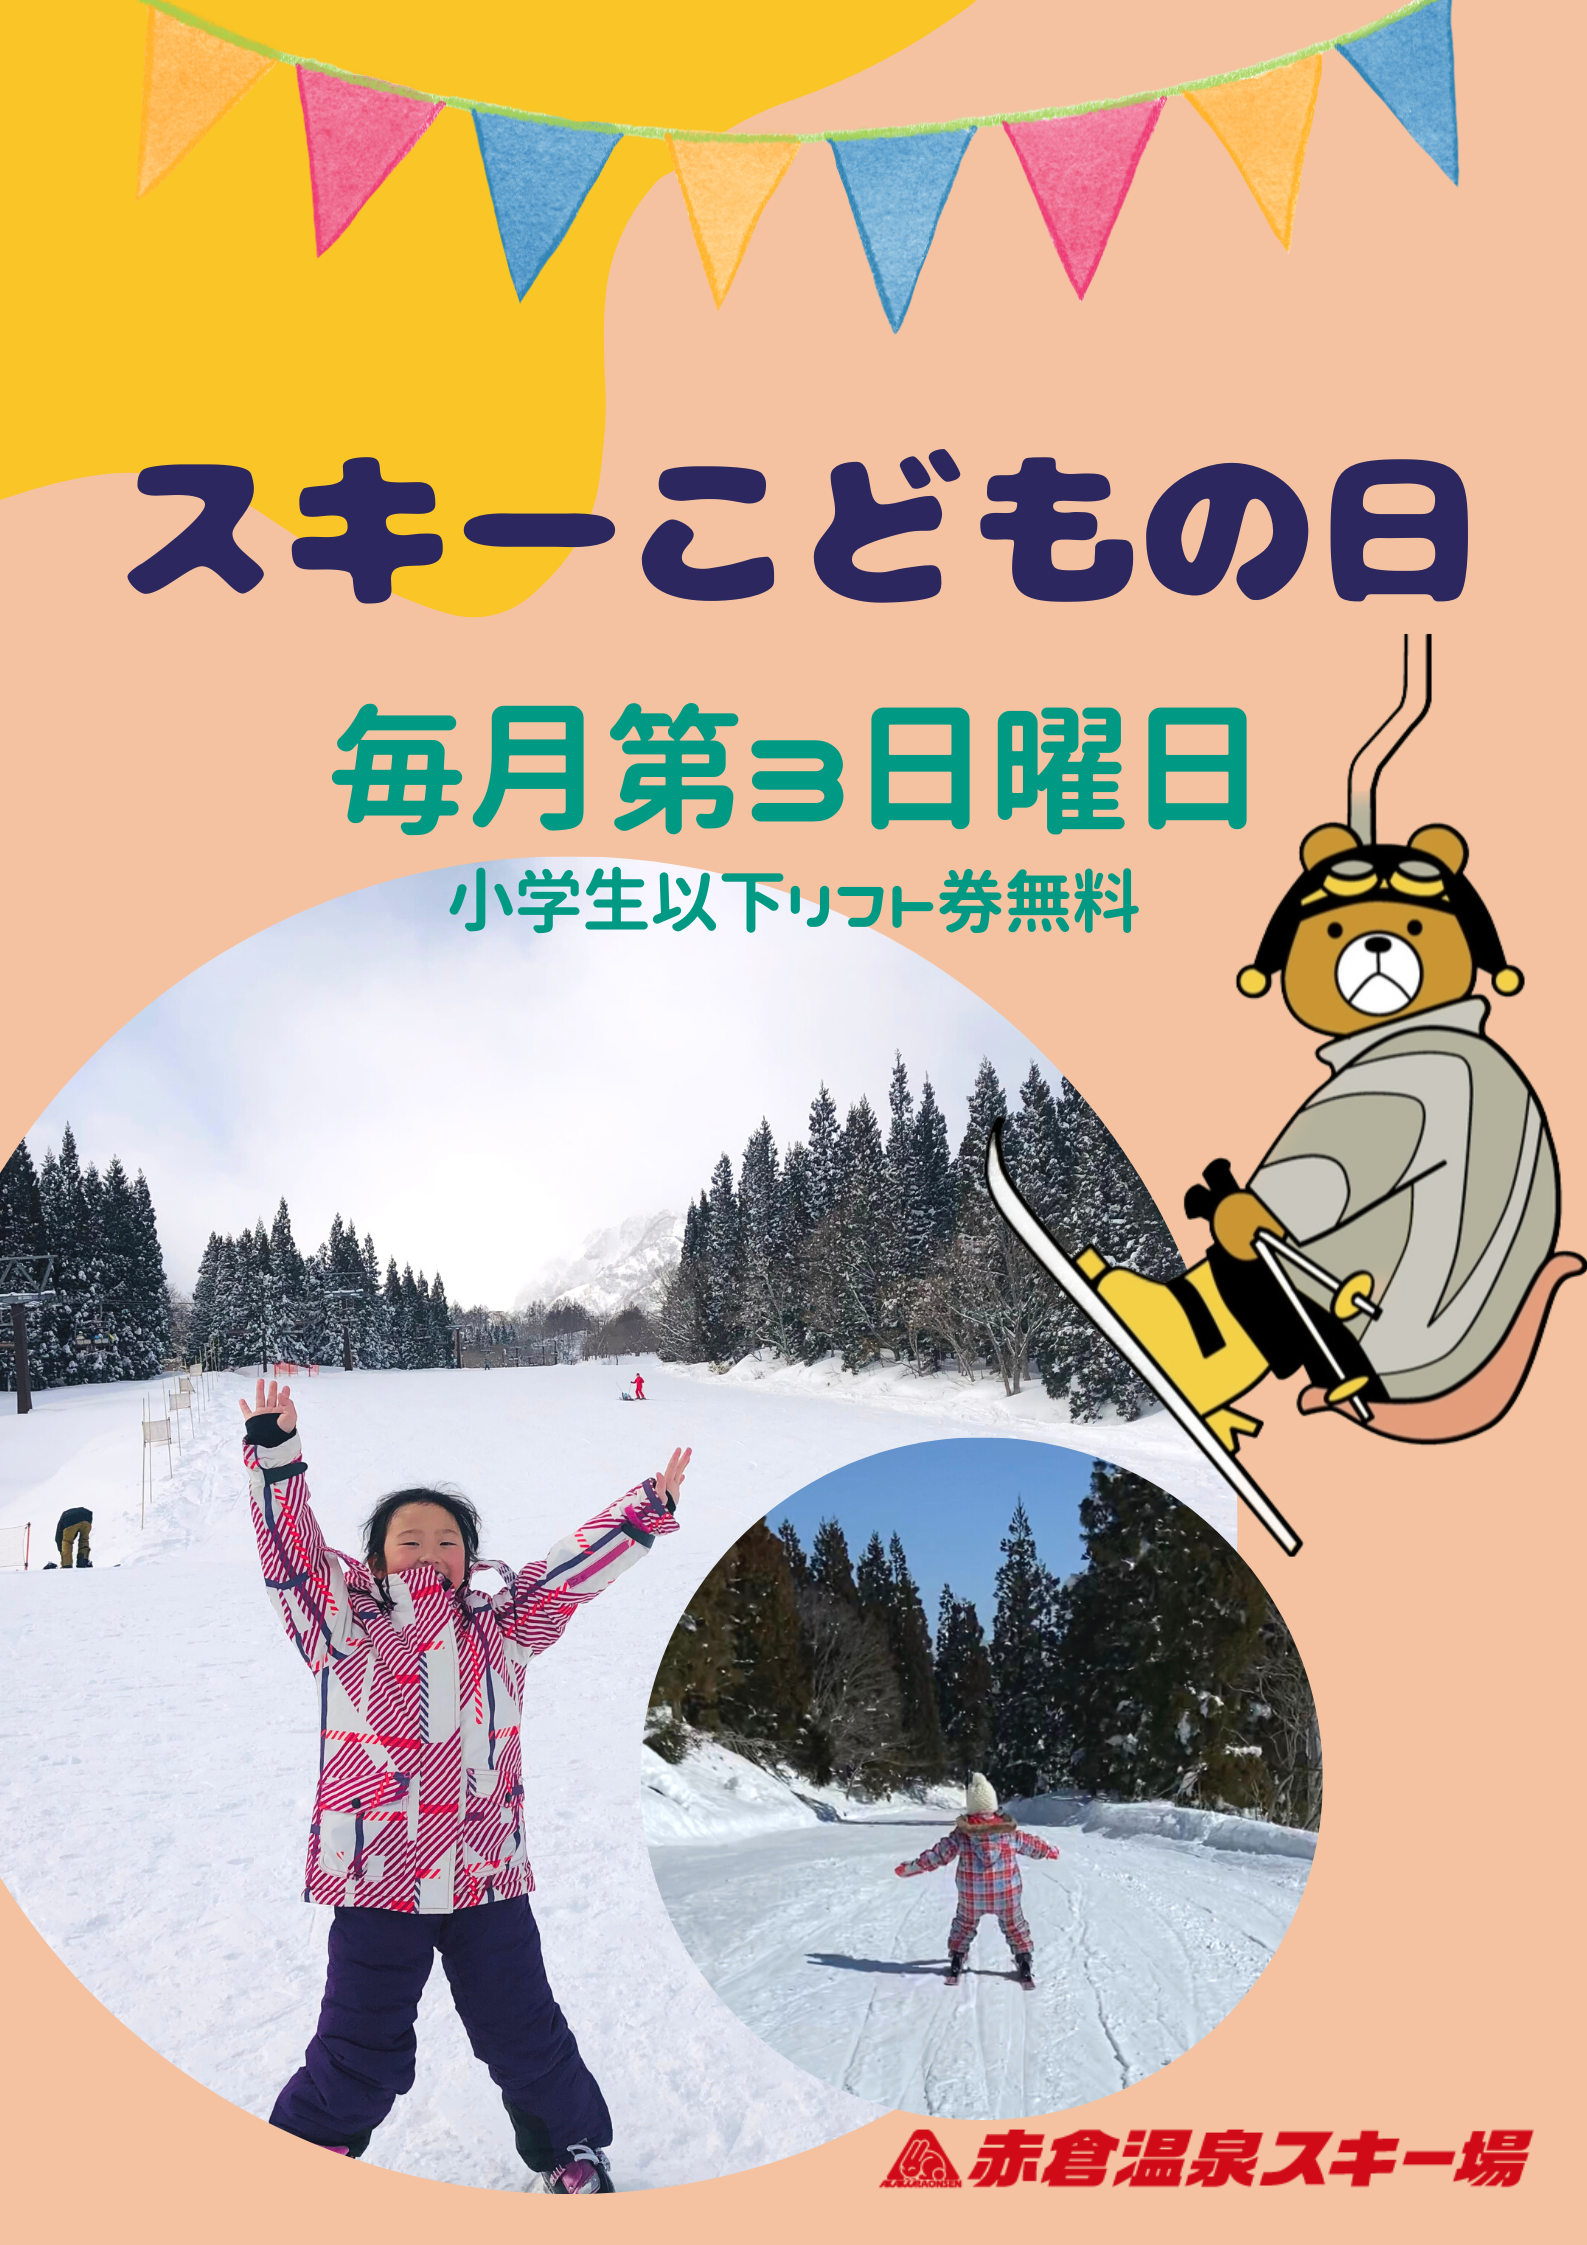 赤倉温泉スキー場 リフト割引券 - スキー場